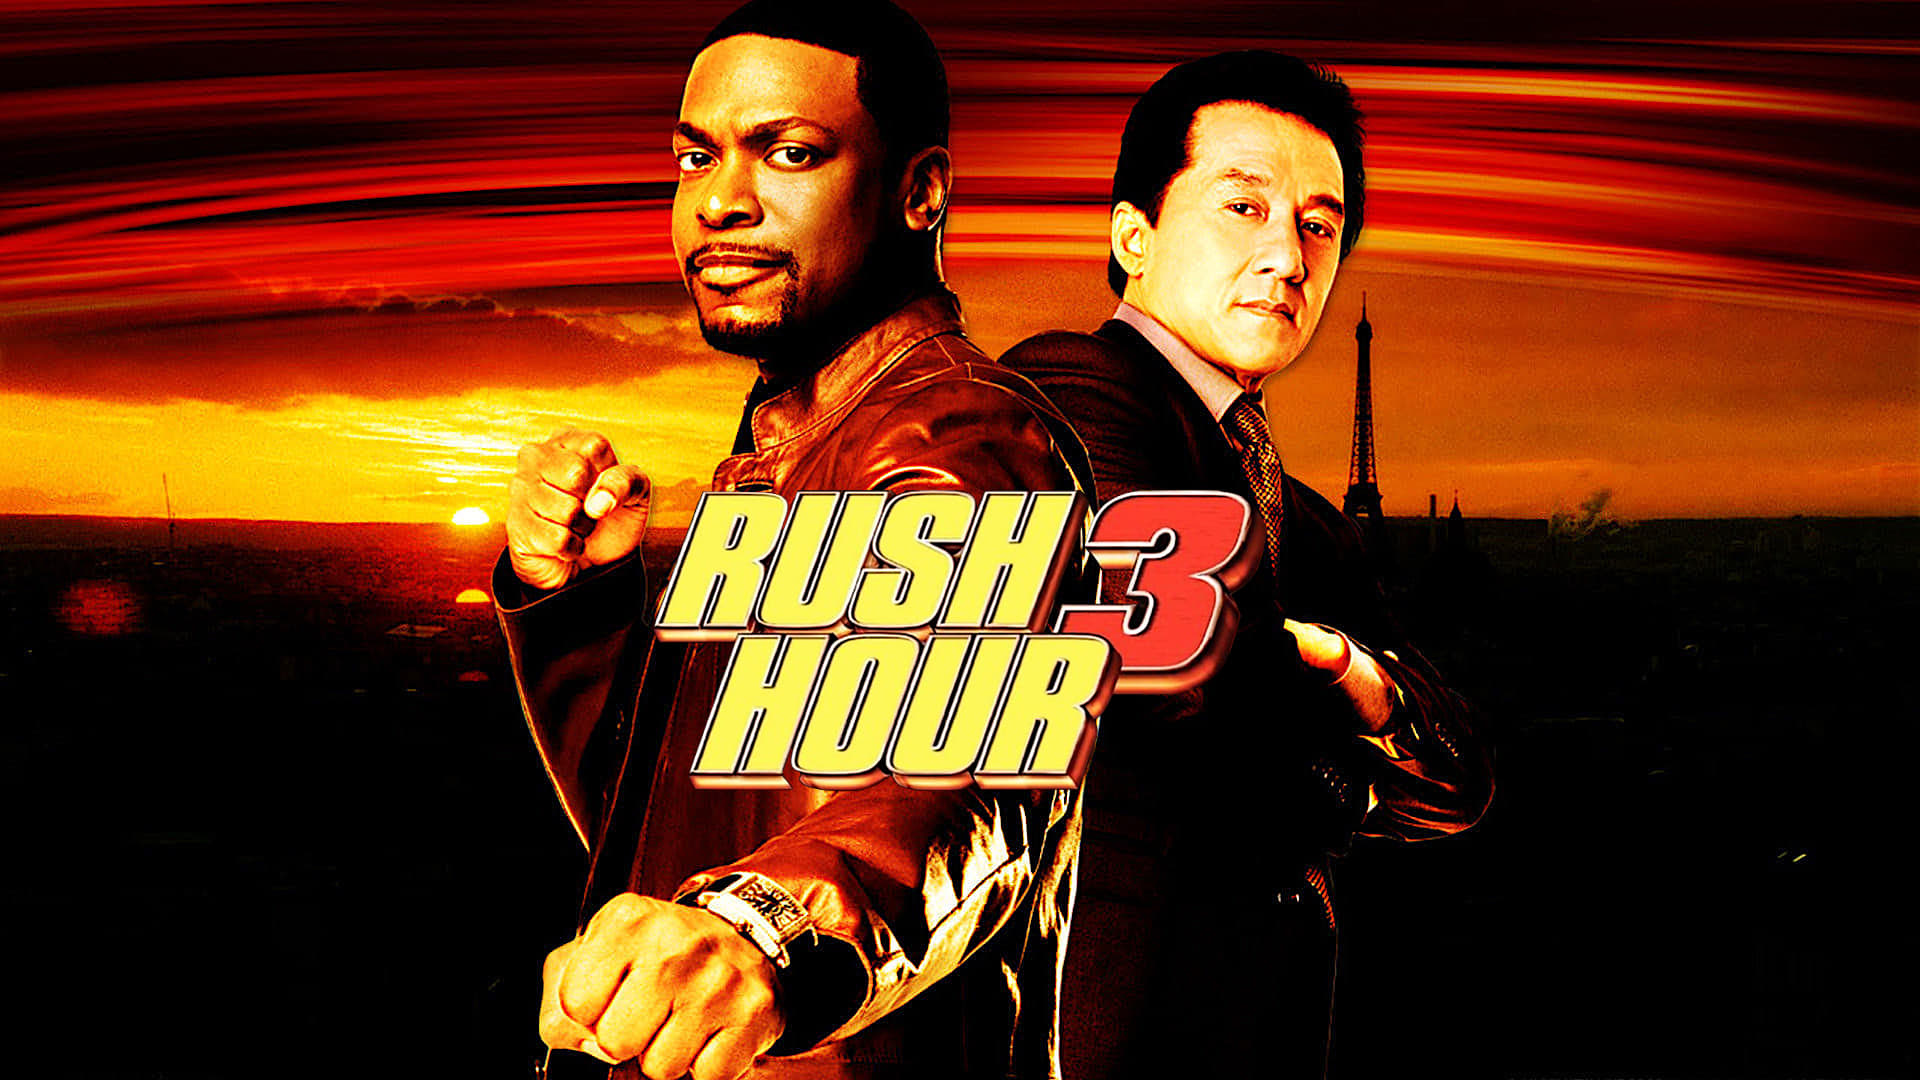 Rush Hour 3 (2007)